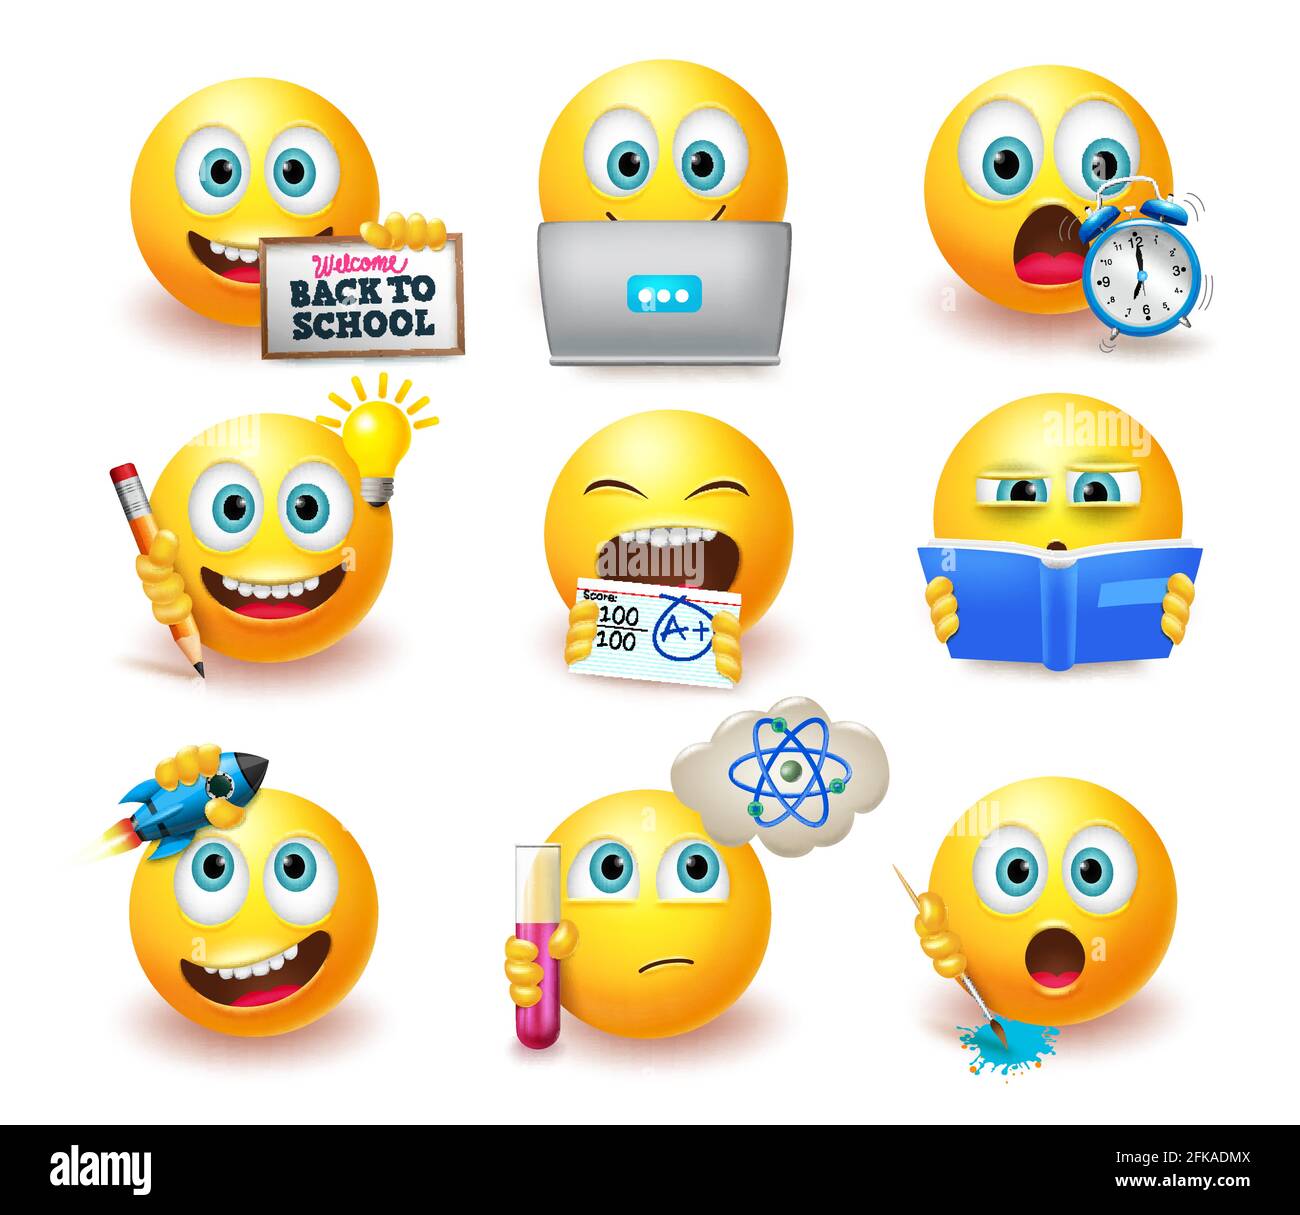 Smileys zurück zur Schule Emoticon Vektor gesetzt. Smiley-Emoji mit pädagogischer Pose und Ausdrucksformen wie Lernen und Denken für Schüler-Emojis. Stock Vektor